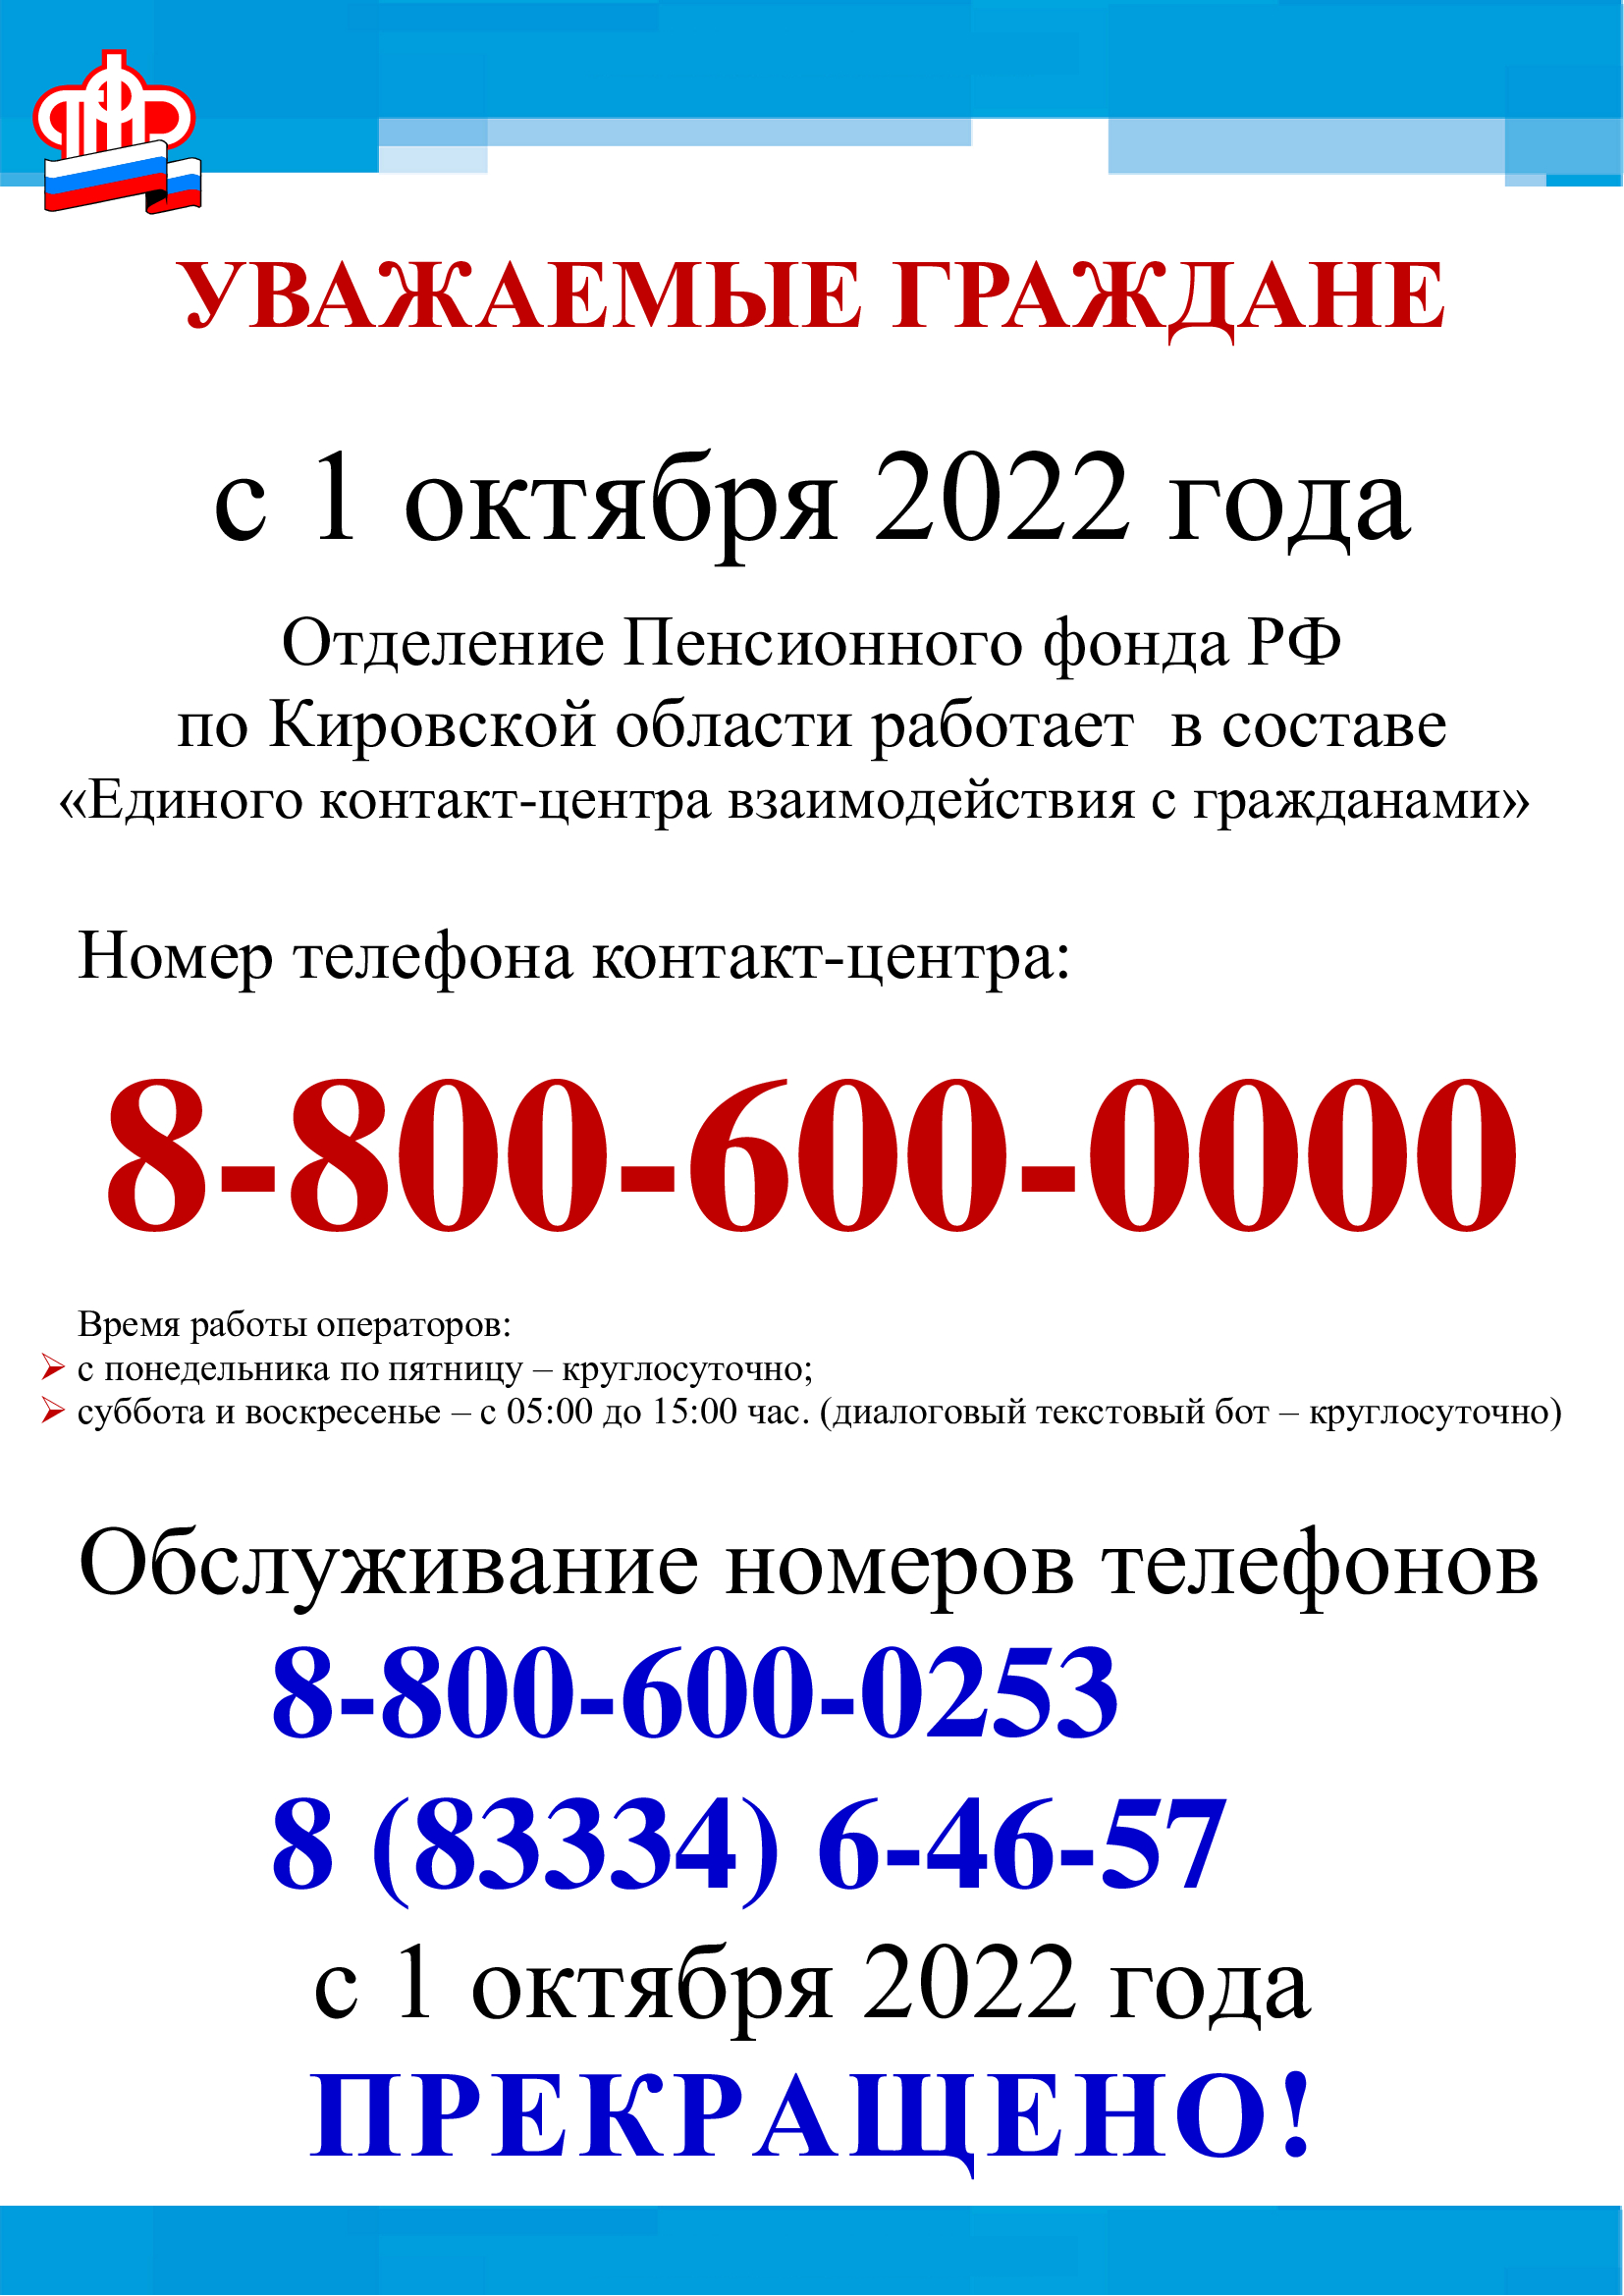 Смена номеров телефонов горячей линии в ПФР.